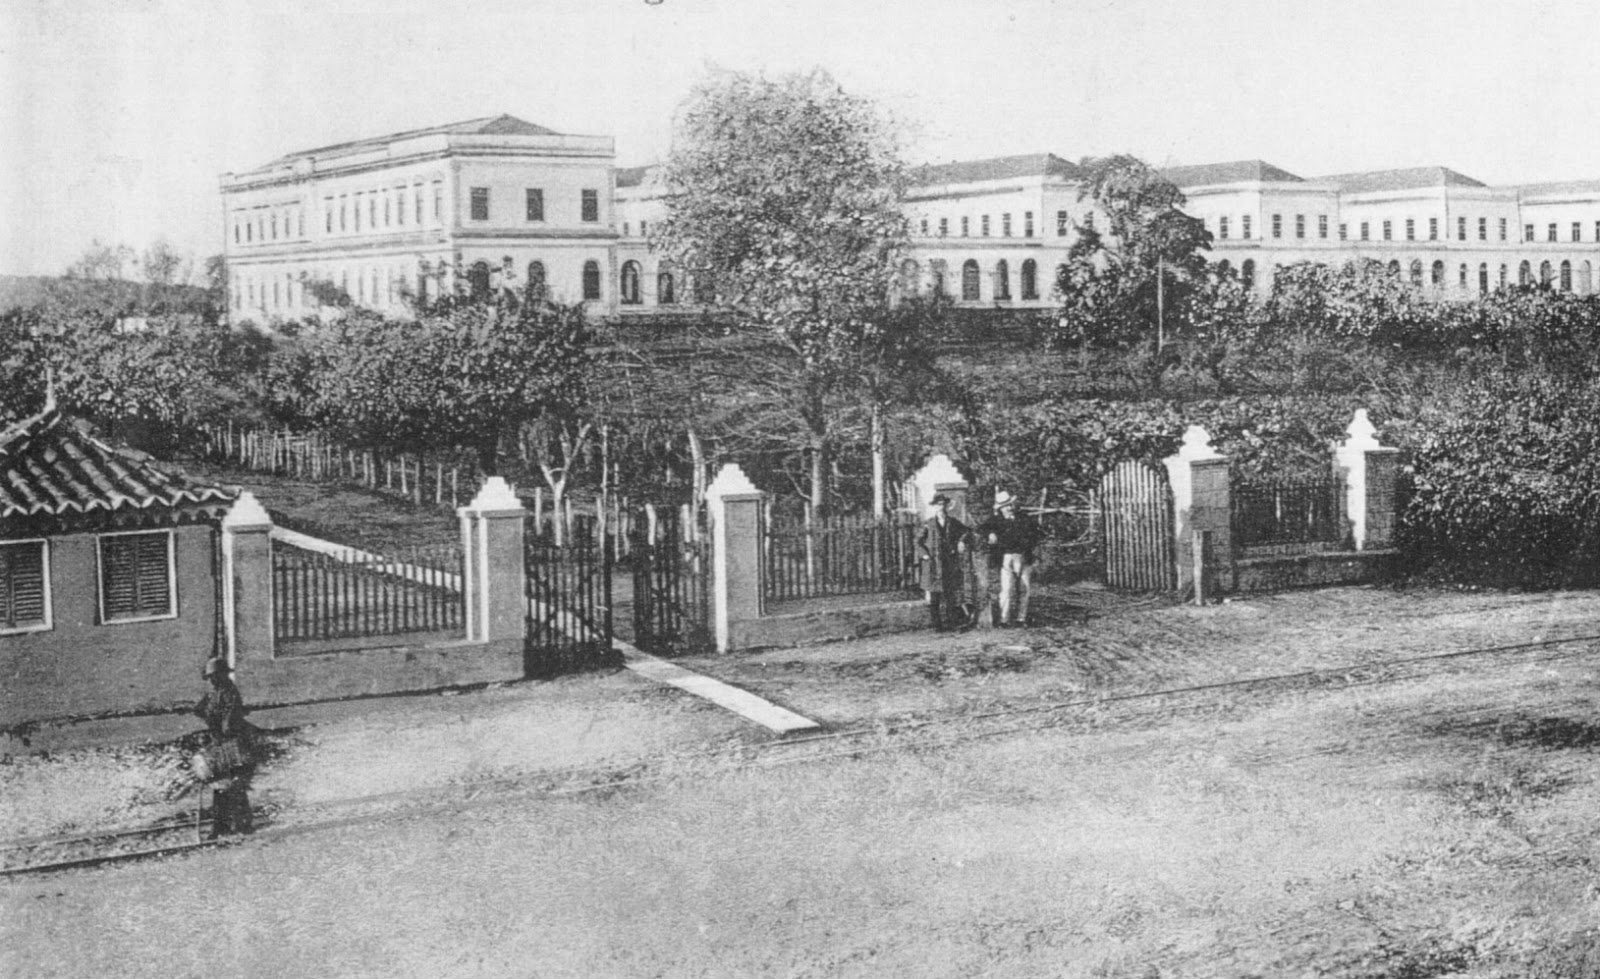 Foto antiga e em preto e branco da entrada do hospício São Pedro, de Porto Alegre, no Rio Grande do Sul. Há uma grade com portões no meio, uma vasta área com arvores e, ao fundo, diversos sobrados lado a lado. 